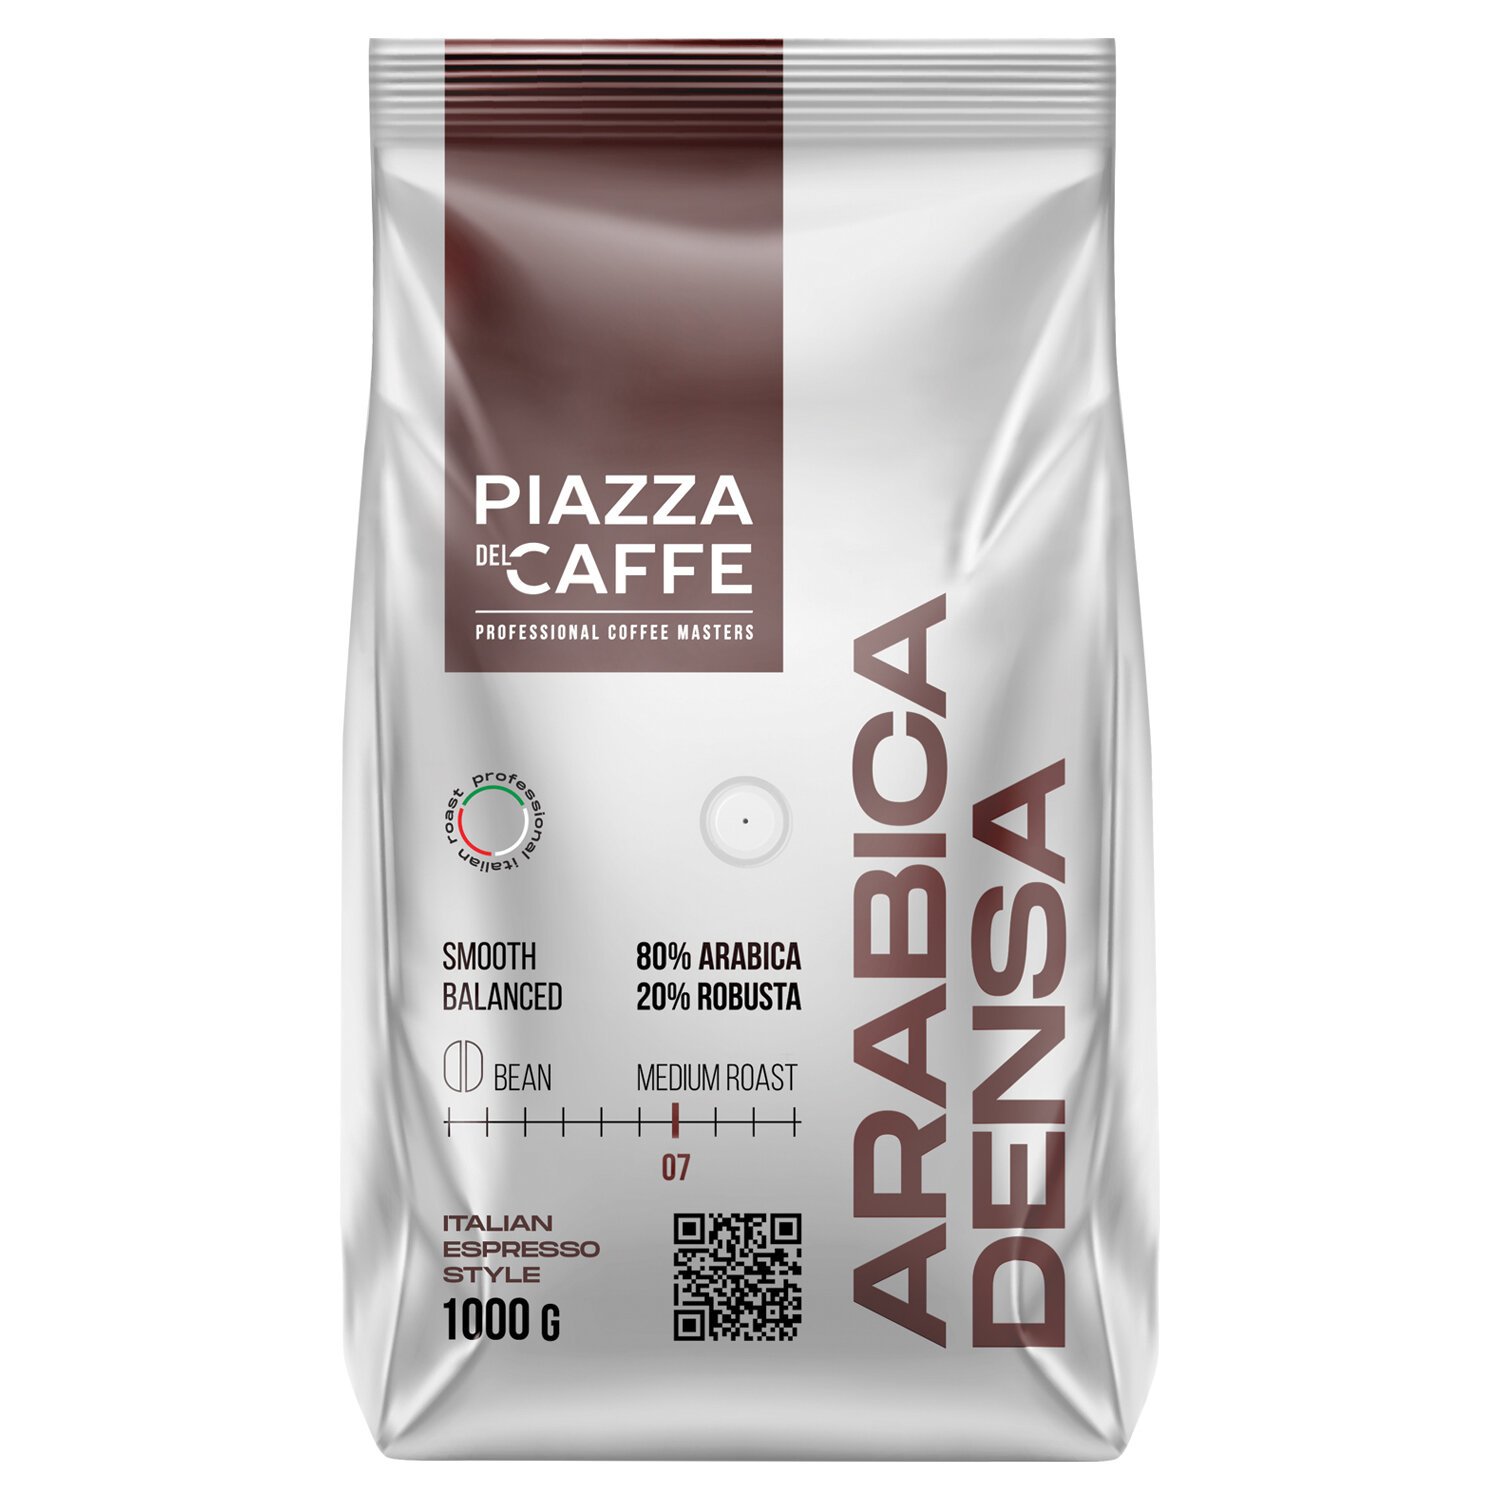  PIAZZA DEL CAFFE 1368-06